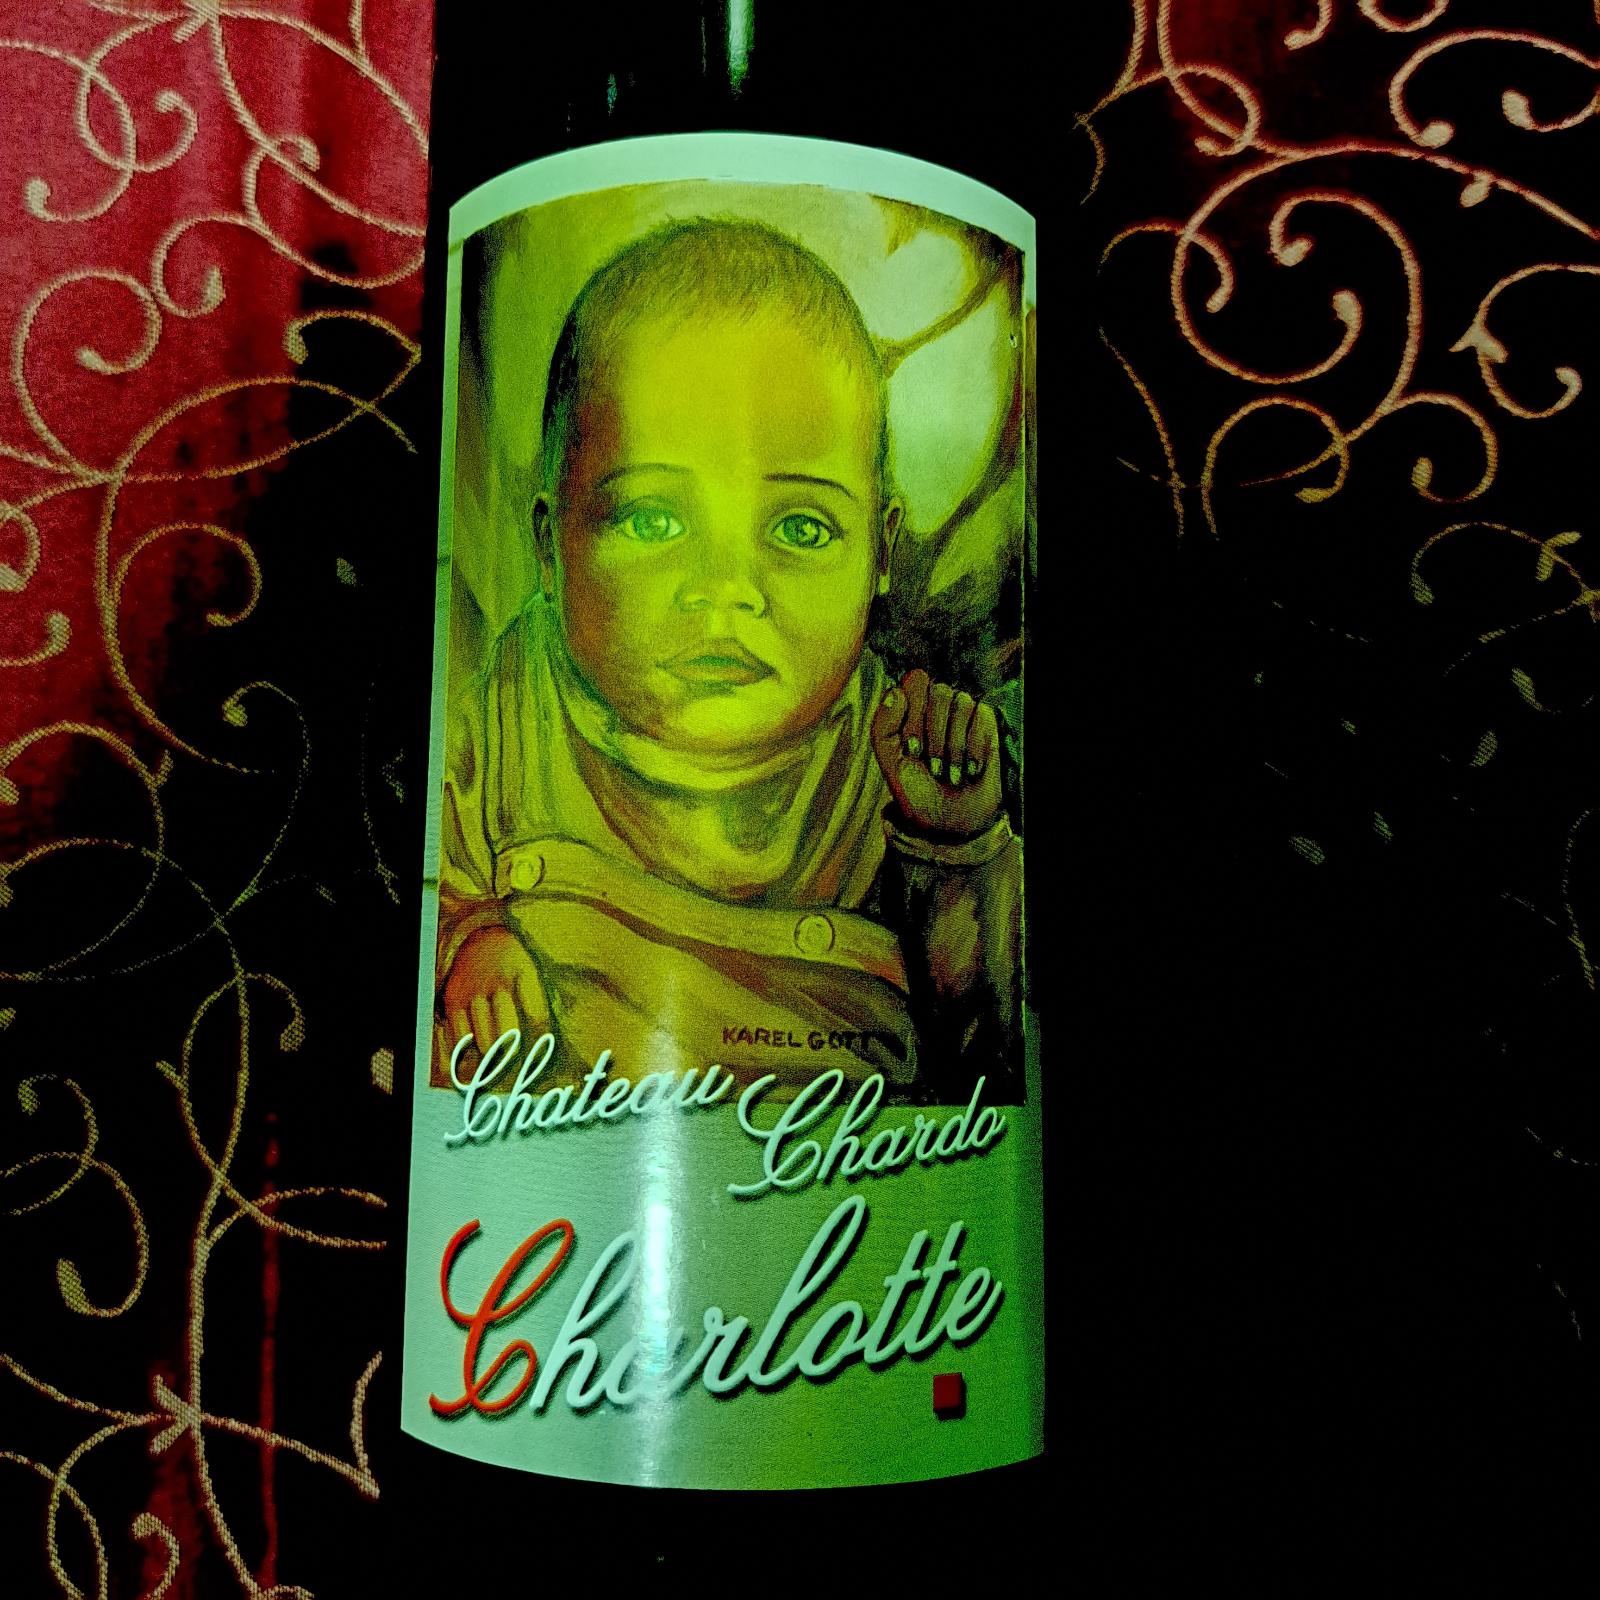 Víno Karel Gott chardonnay 2005 výber z hrozna - Potraviny